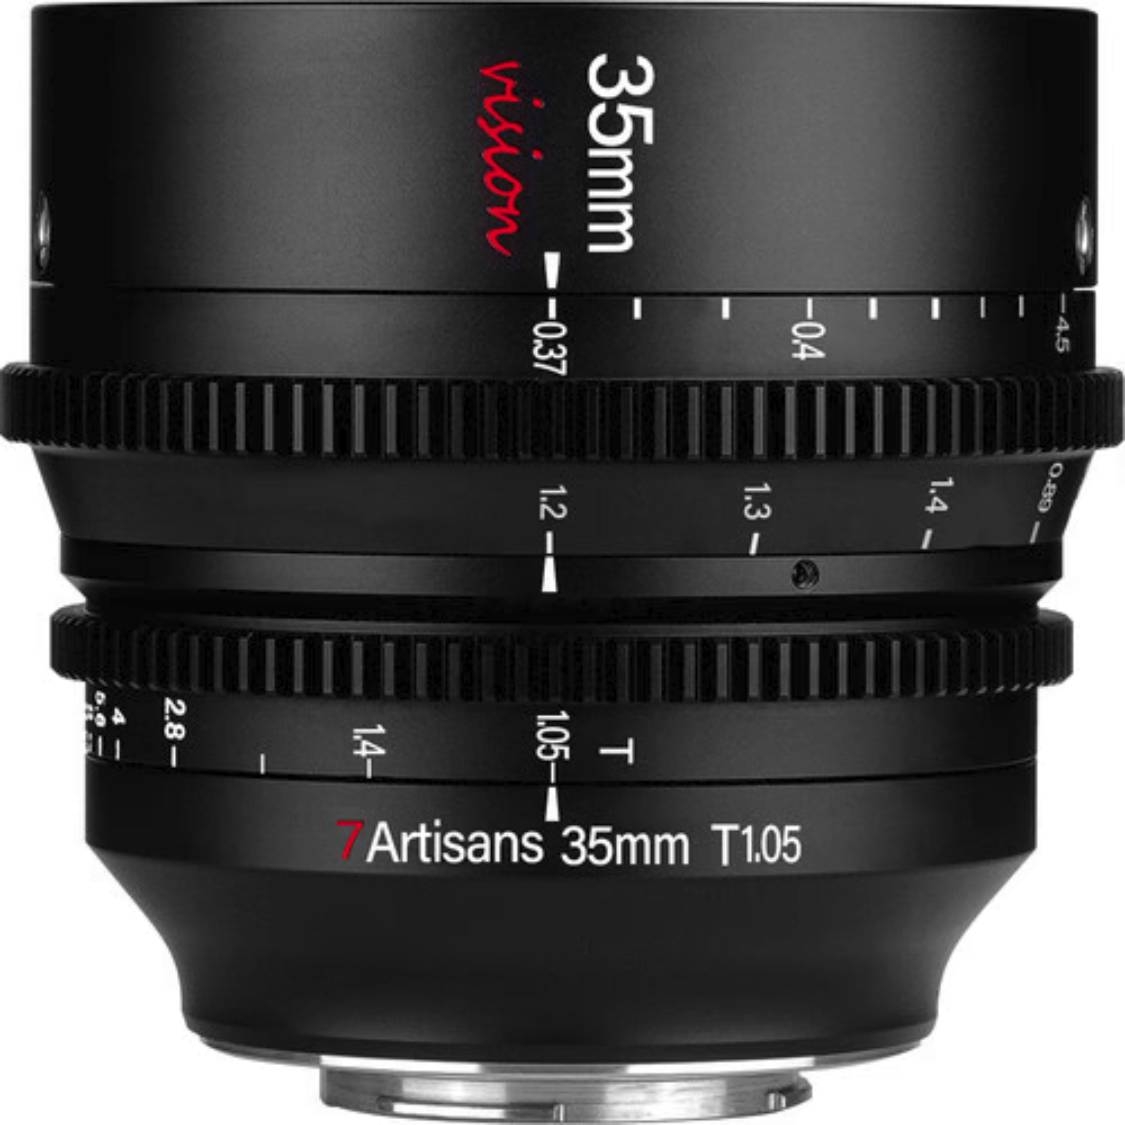 7artisans 35mm T1.05 Vision Cine Lens for Micro 4/3